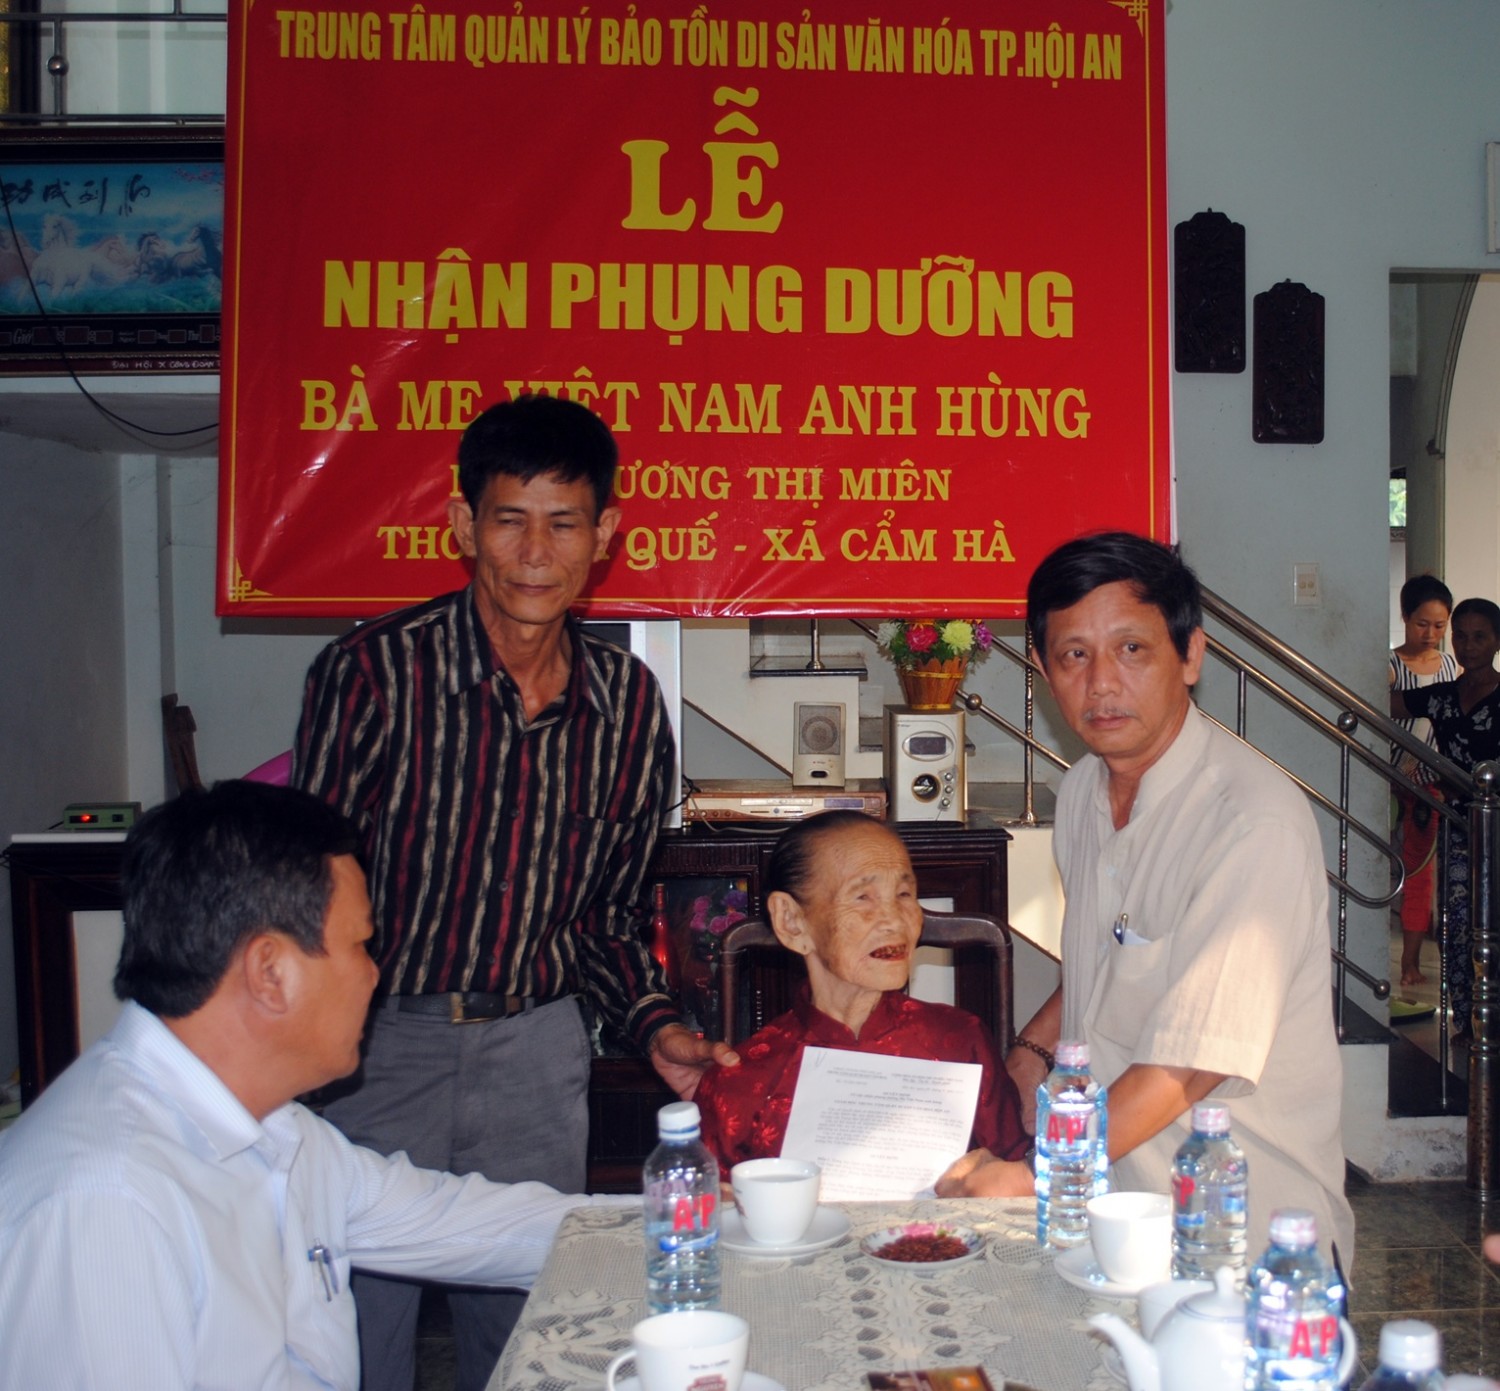 Trung tâm Quản lý Bảo tồn Di sản Văn hóa Hội An nhận phụng dưỡng Mẹ Việt Nam anh hùng